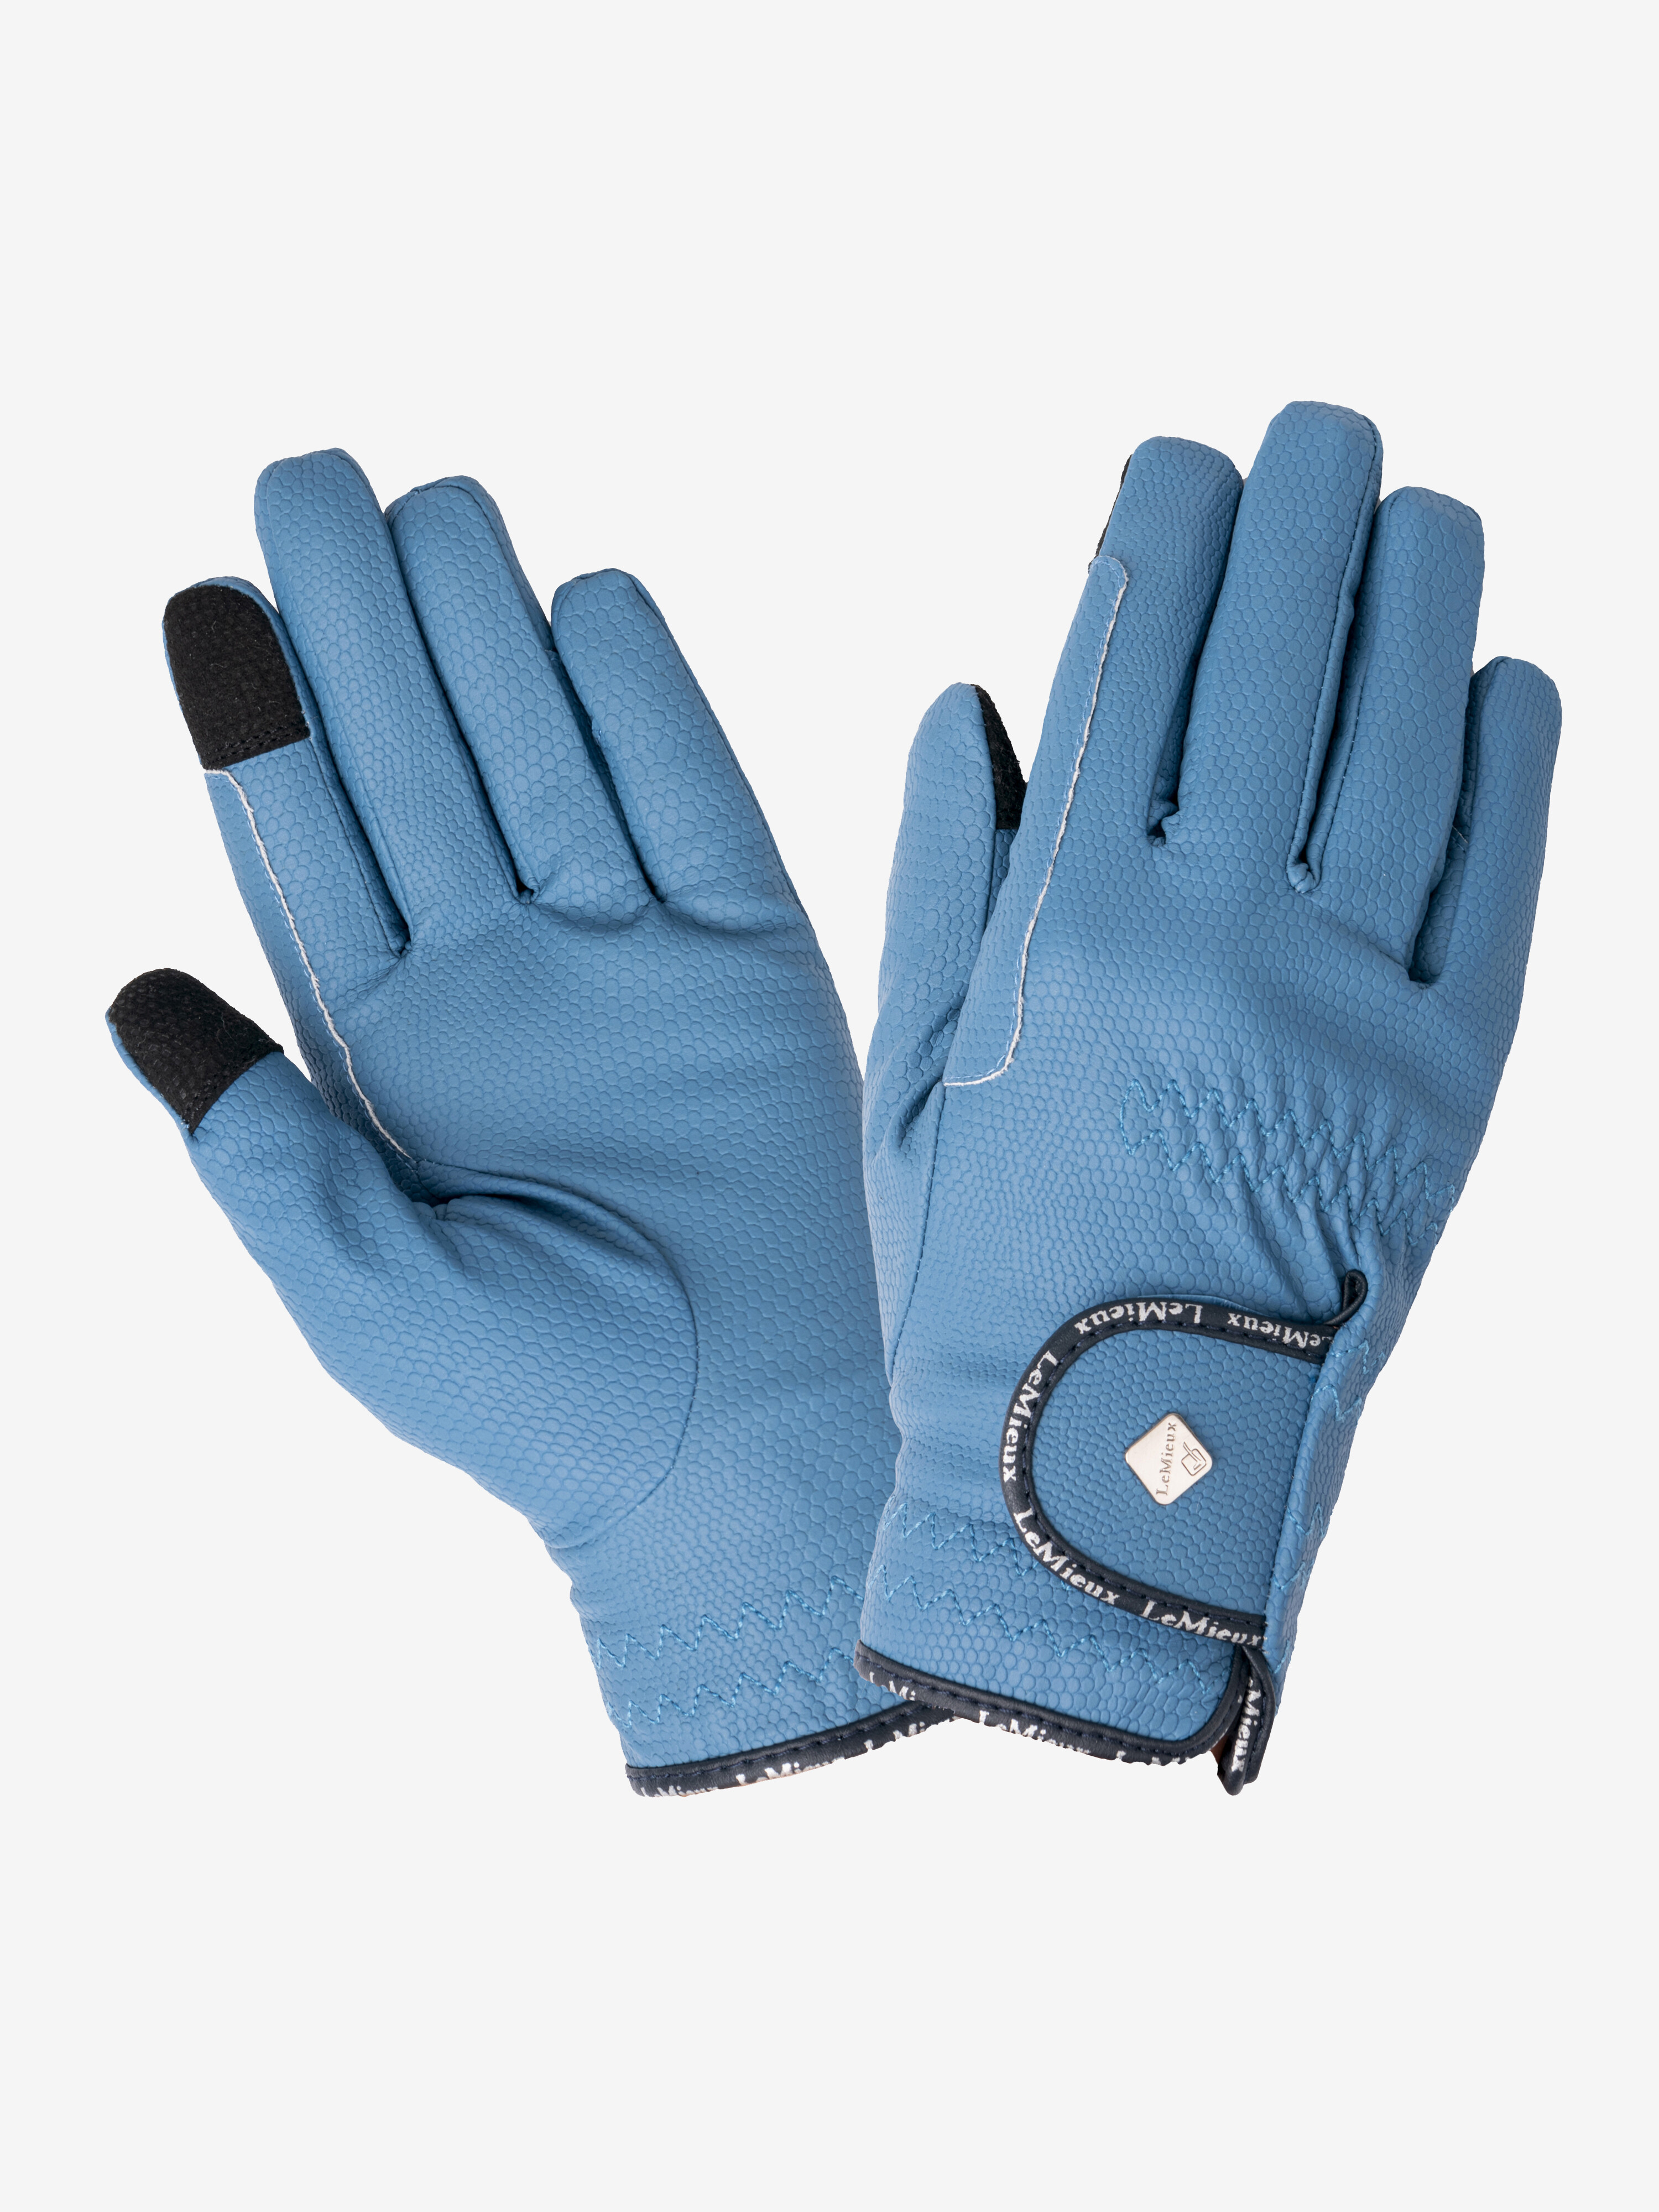 LeMieux ProTouch Polar Grip Gloves 